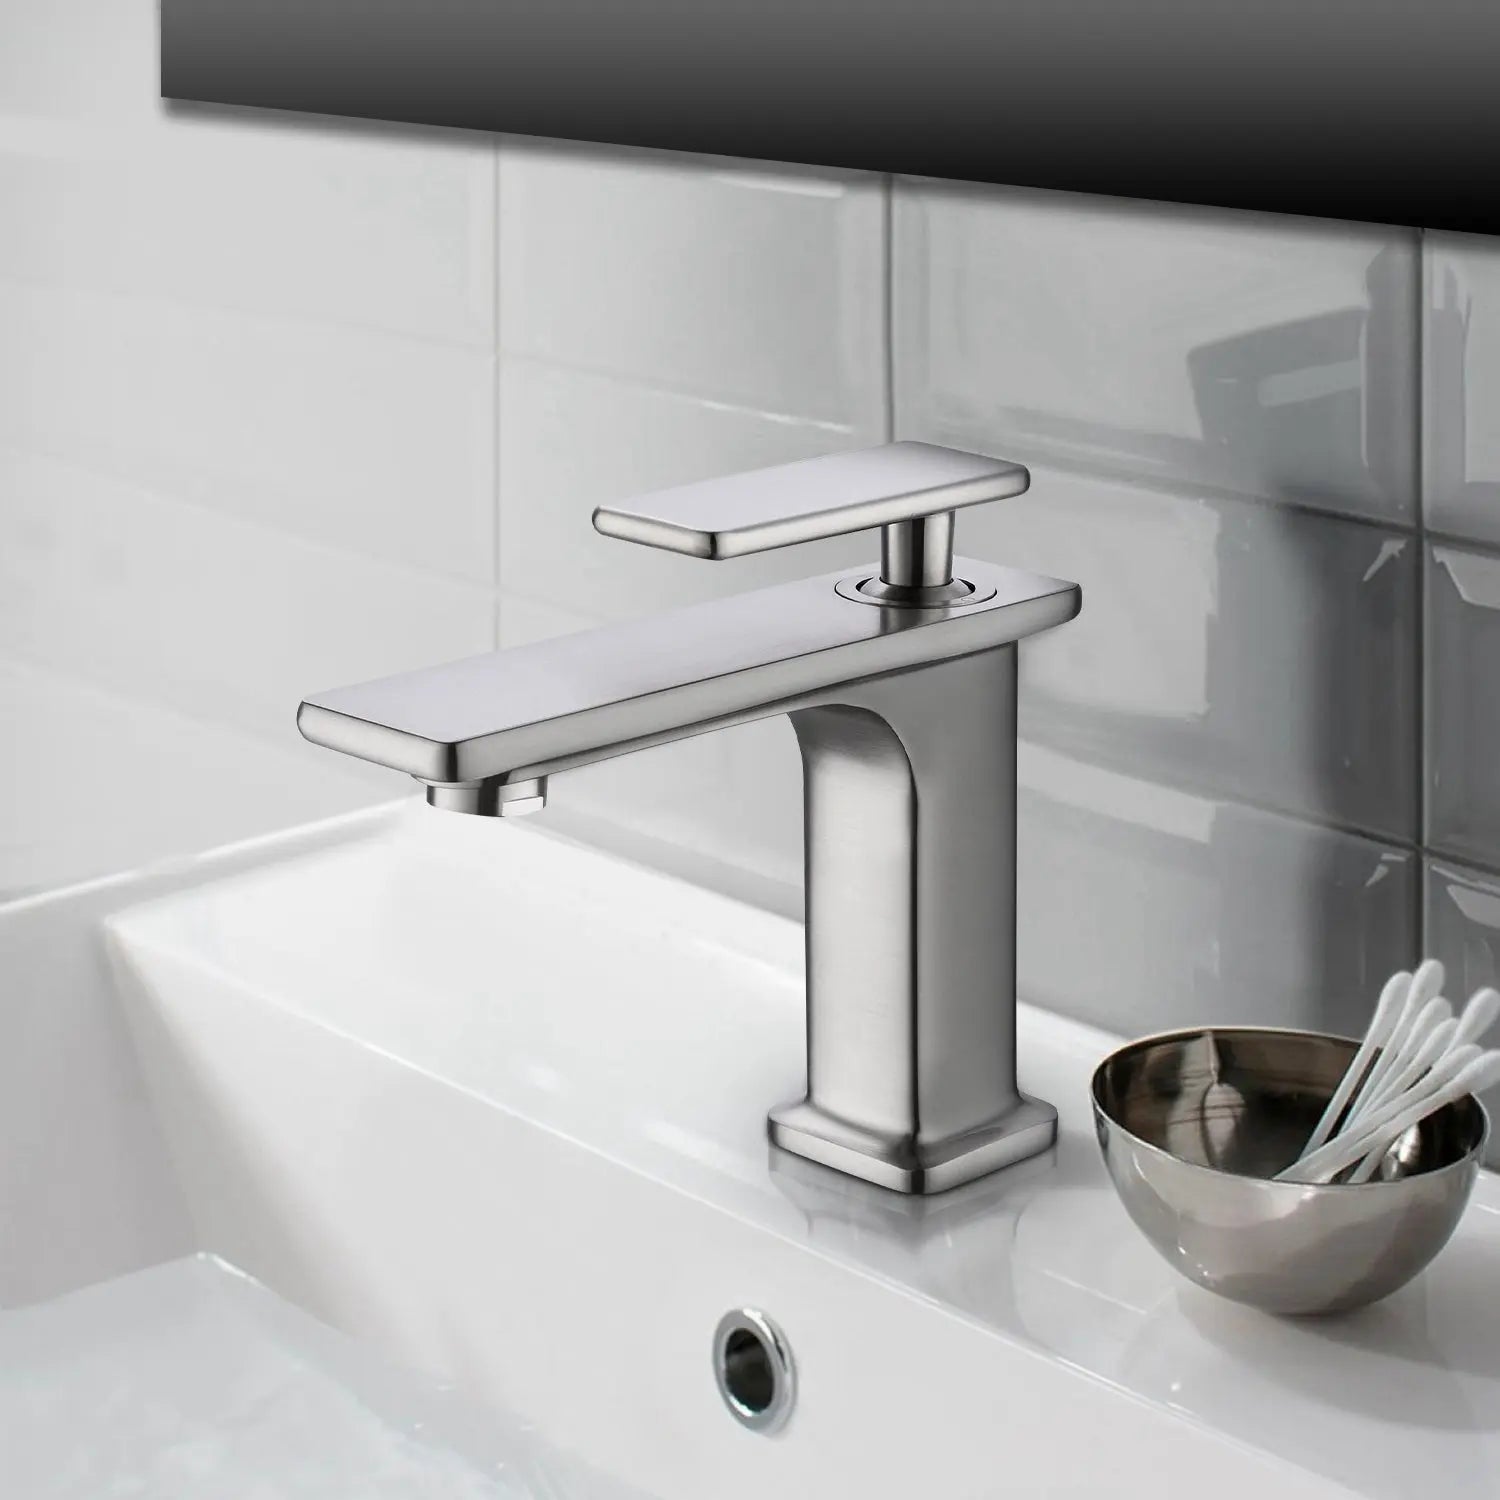 Single-Handle Single-Hole Bathroom Basin Faucet - larahd